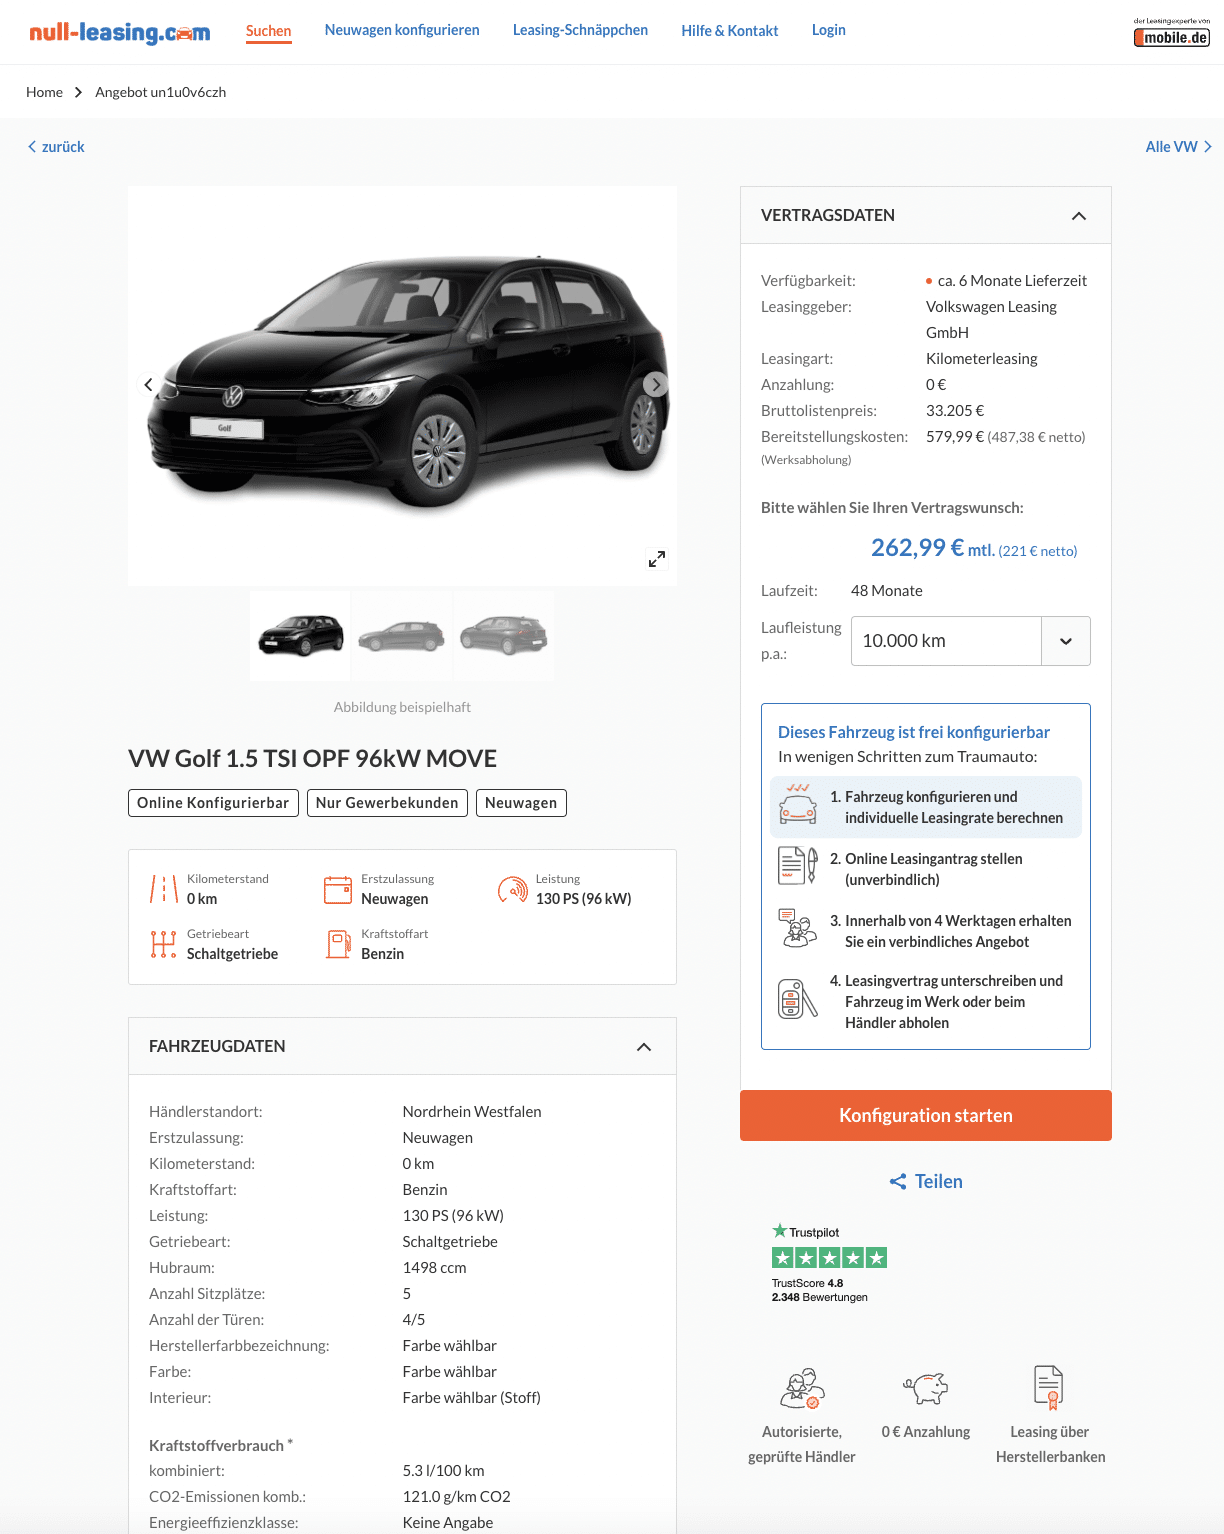 tyveri Sophie hvad som helst VW Golf VIII Leasing für 221 Euro im Monat netto - sparneuwagen.de